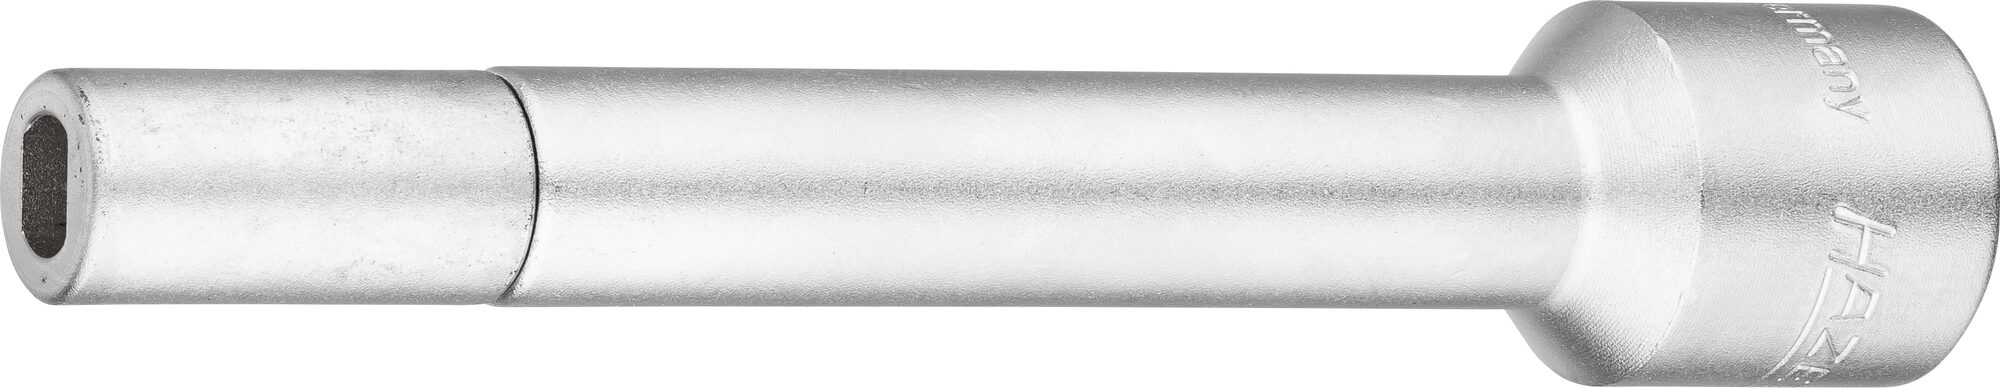 HAZET Verlängerung 4910-68 · Vierkant hohl 12,5 mm (1/2 Zoll) · Zapfenprofil hohl · für Zapfenprofil 6 x 8 mm